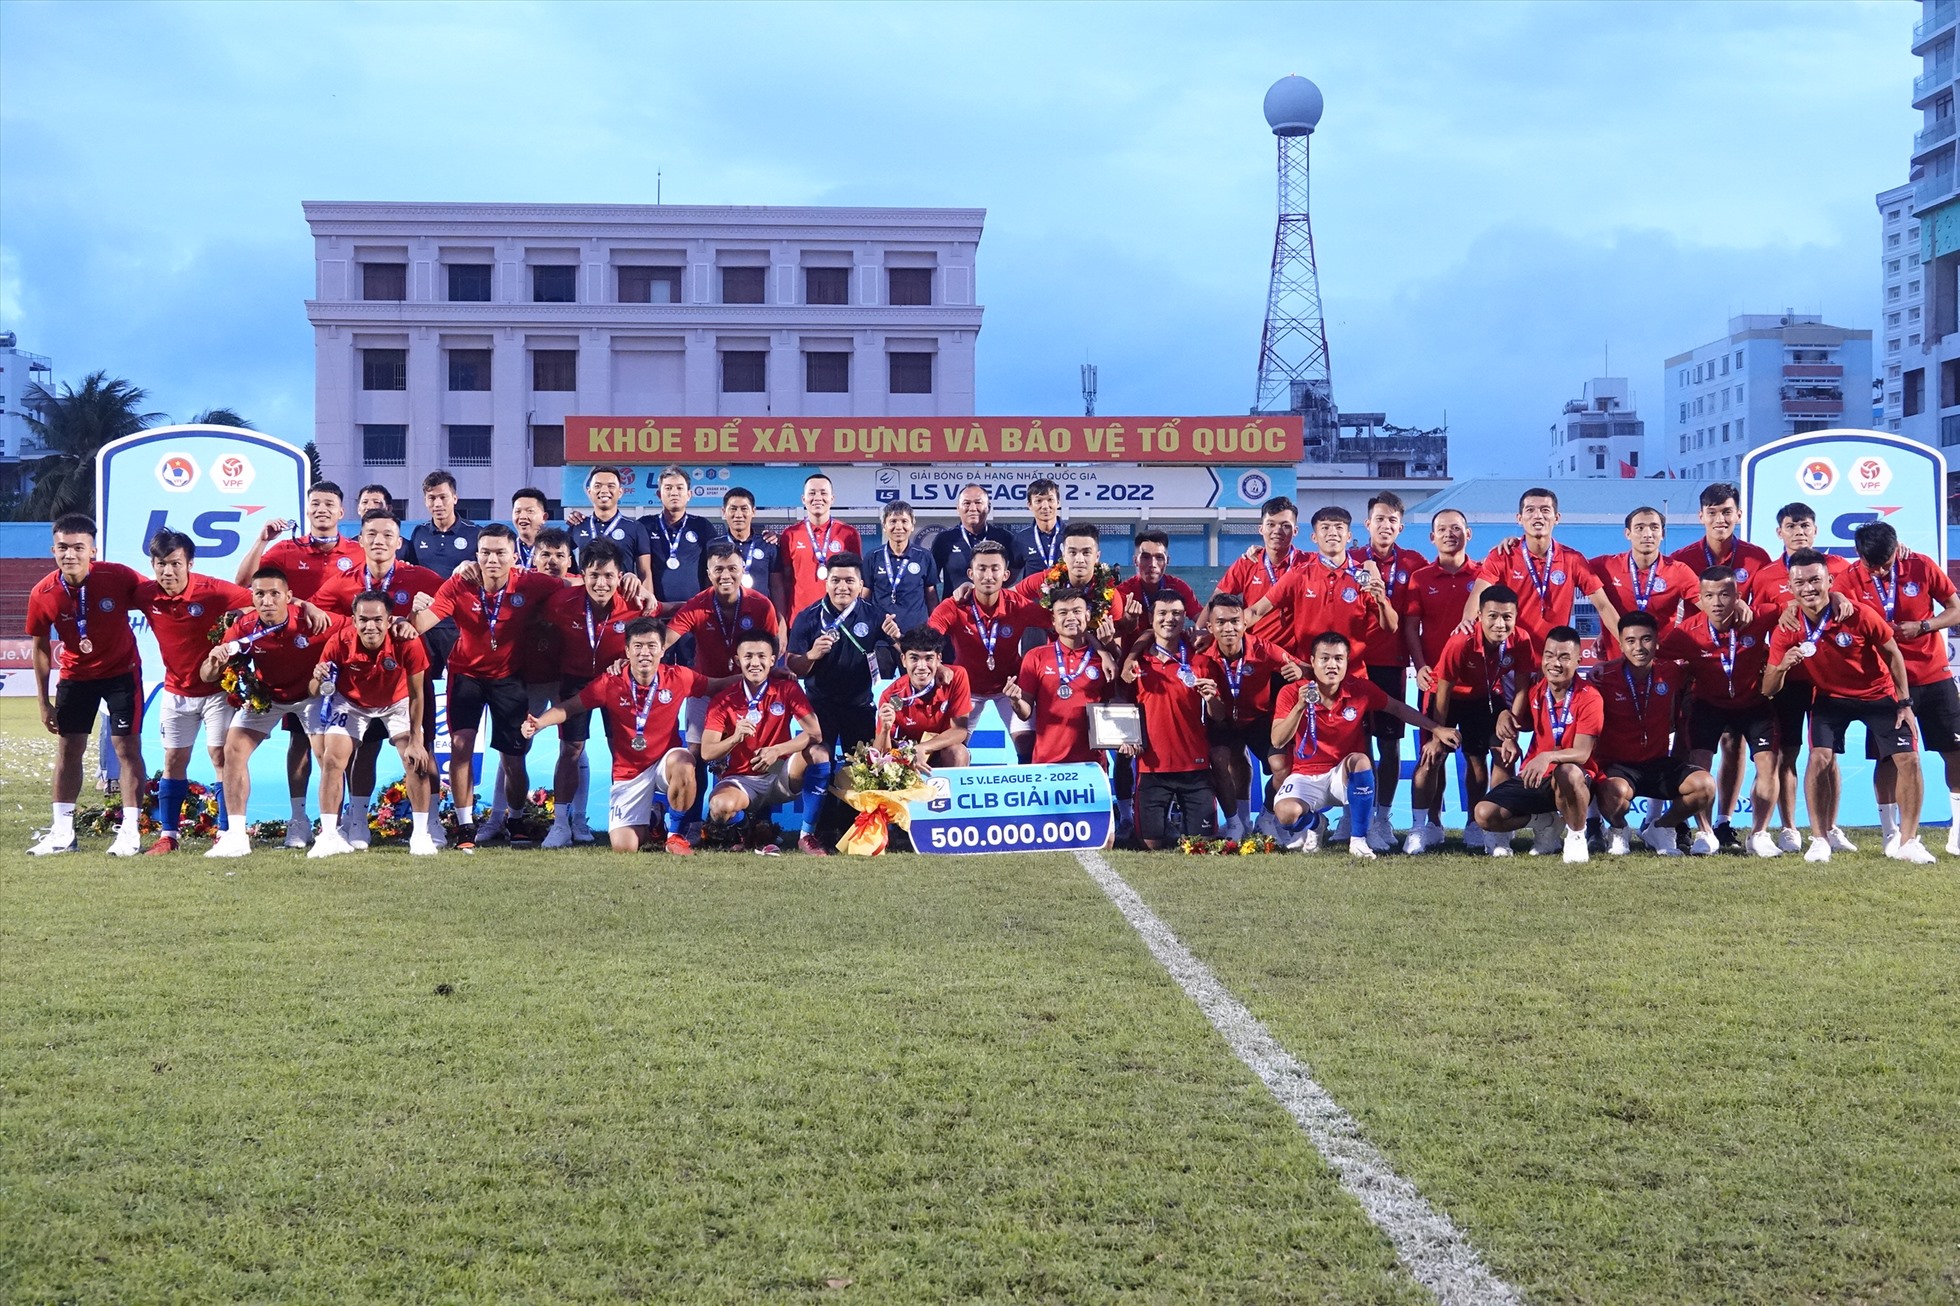 Với ngôi á quân giải hạng Nhất 2022, đội Khánh Hòa được ban tổ chức thưởng 500 triệu đồng, bên cạnh số tiền lớn từ ban lãnh đạo đội bóng. Ông Tân cho biết sẽ sớm họp với ban lãnh đạo đội và địa phương để chuẩn bị cho V.League 2023.